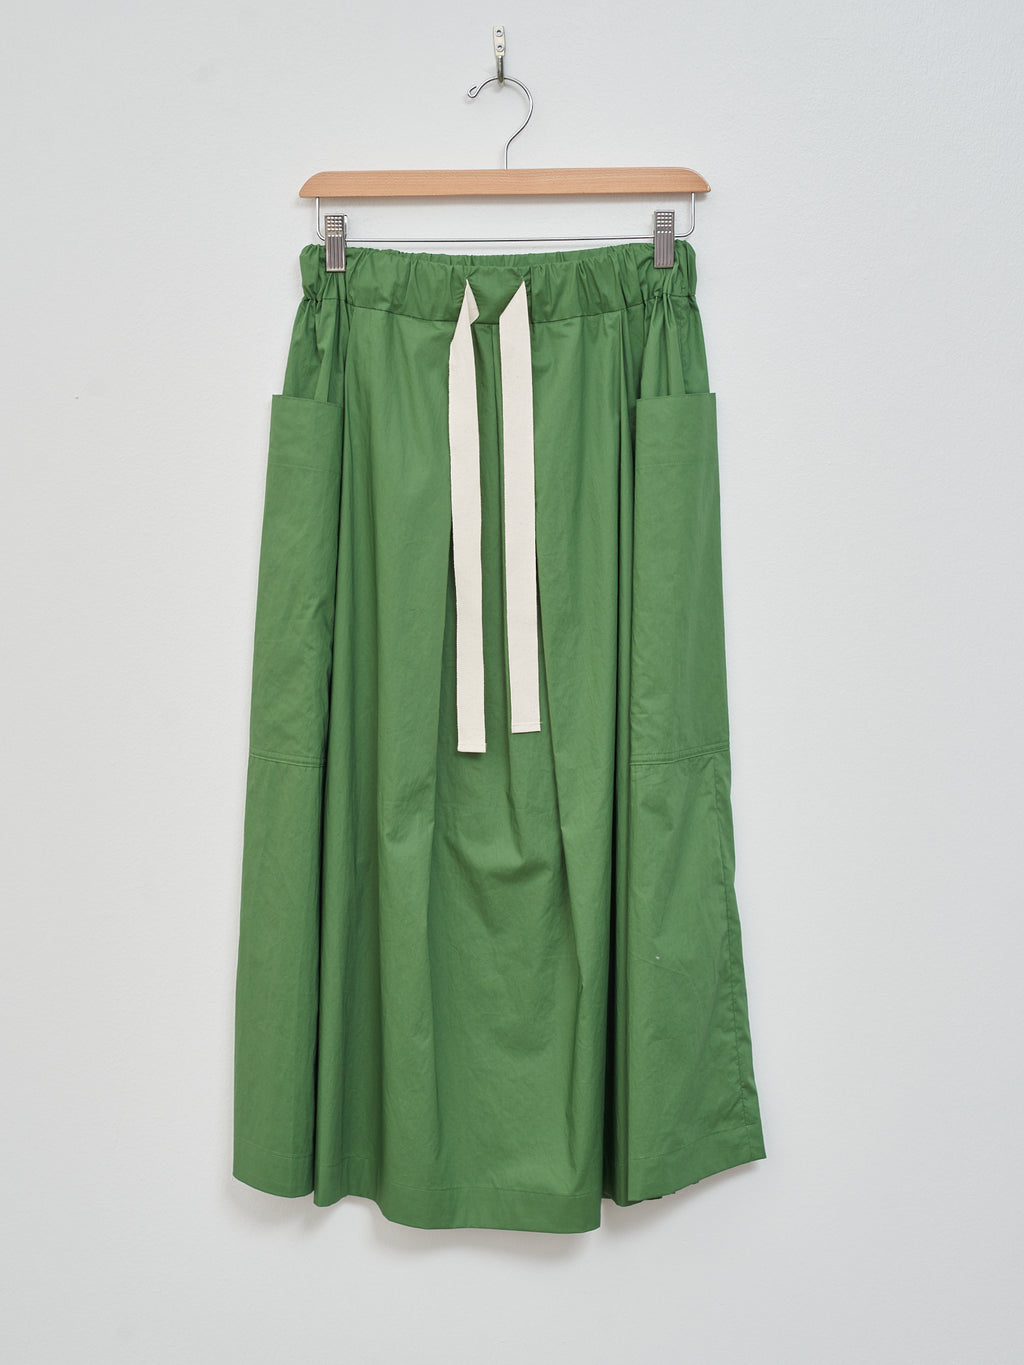 Namu Shop - Nicholson & Nicholson Kanon Poplin Skirt - Green